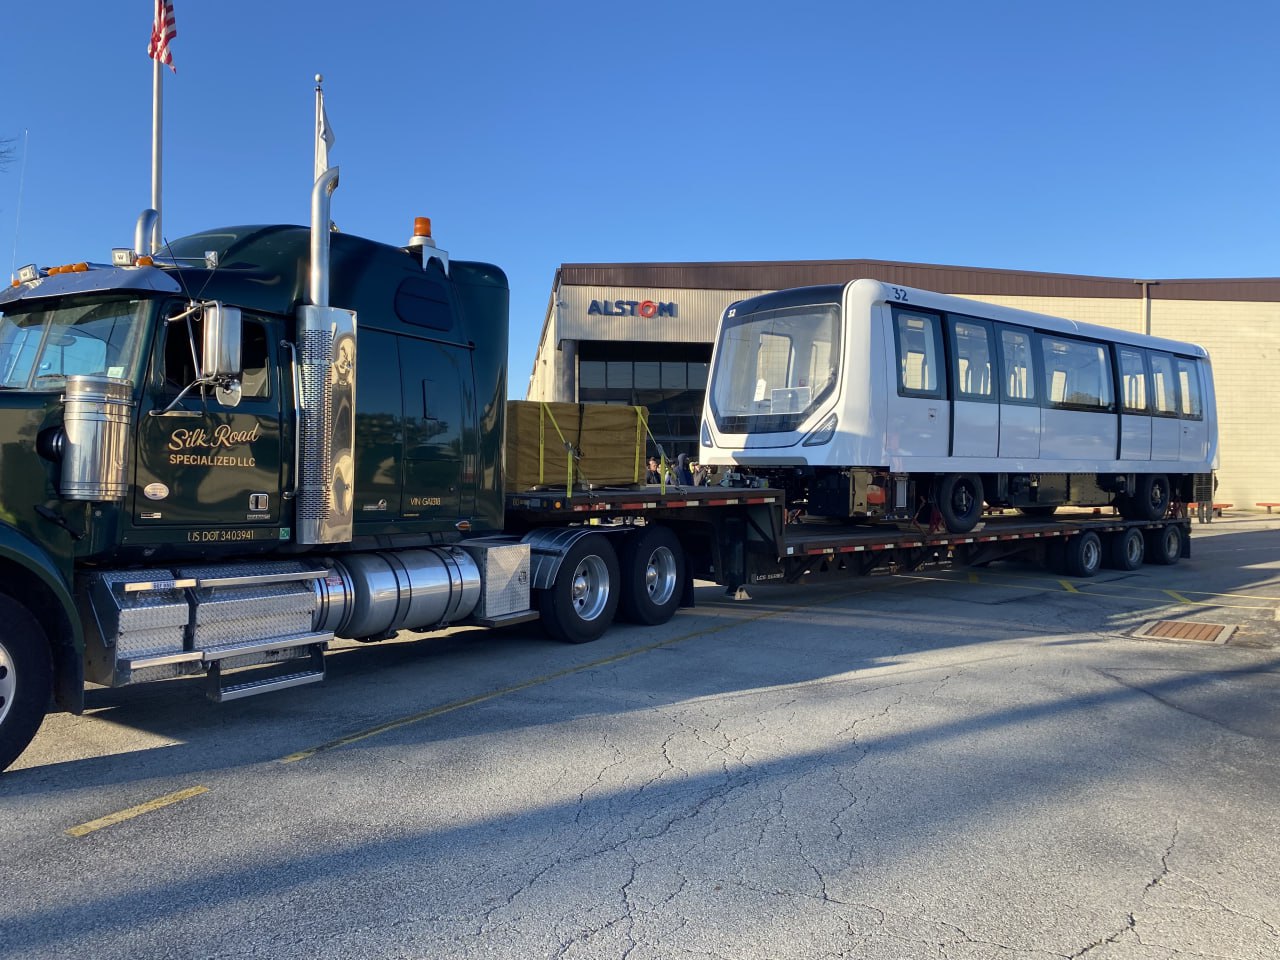 Transporting of the Alstom rail car to Denver